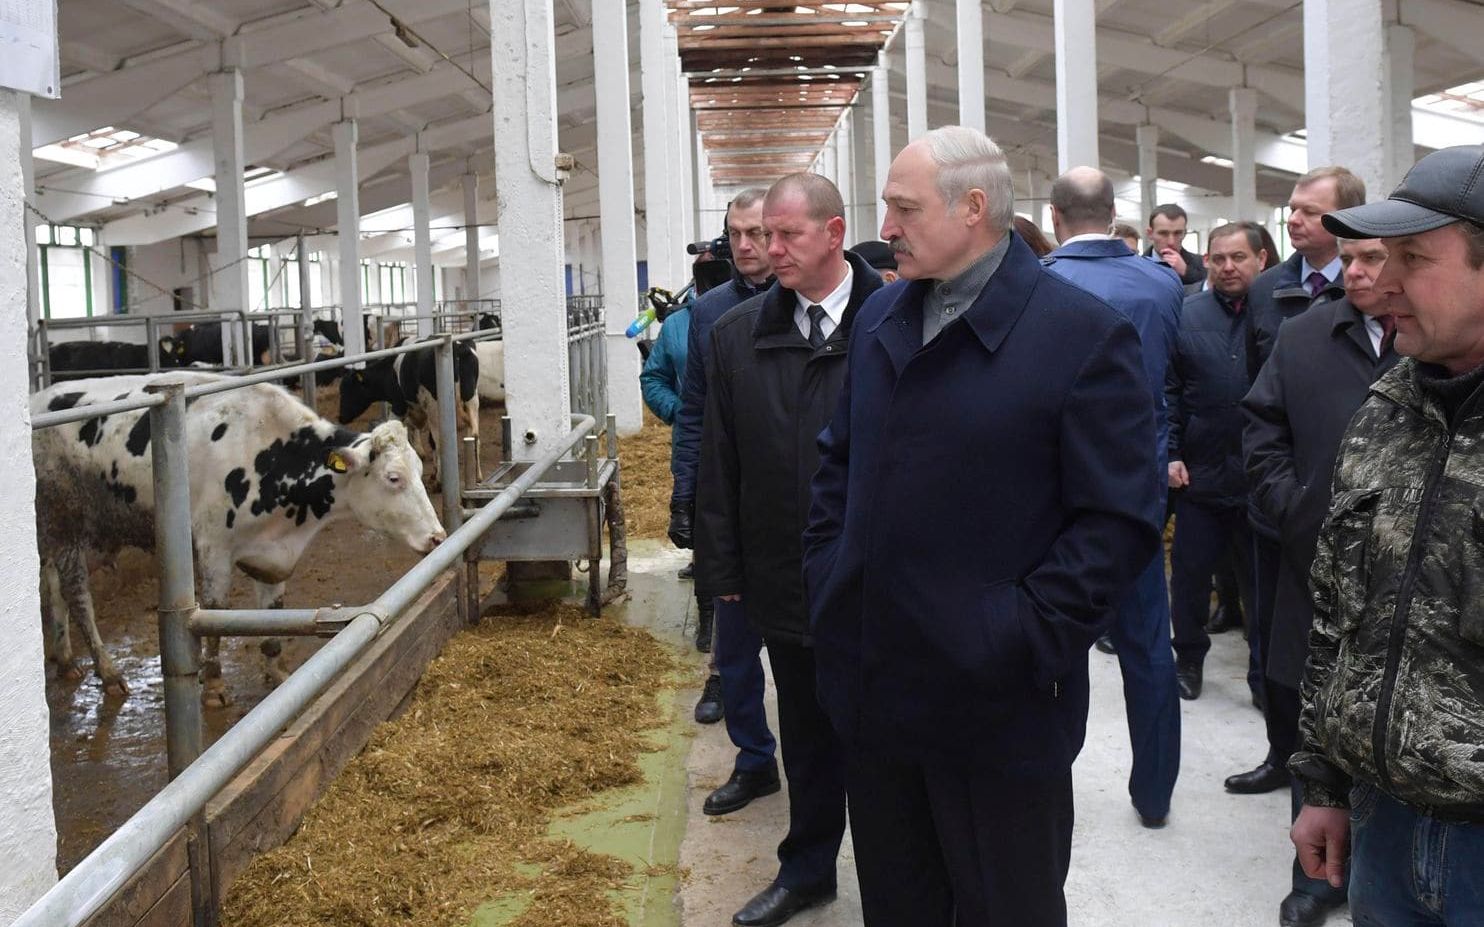 奶牛场变“集中营” 白俄罗斯总统当场发飙 摘掉州长乌纱帽